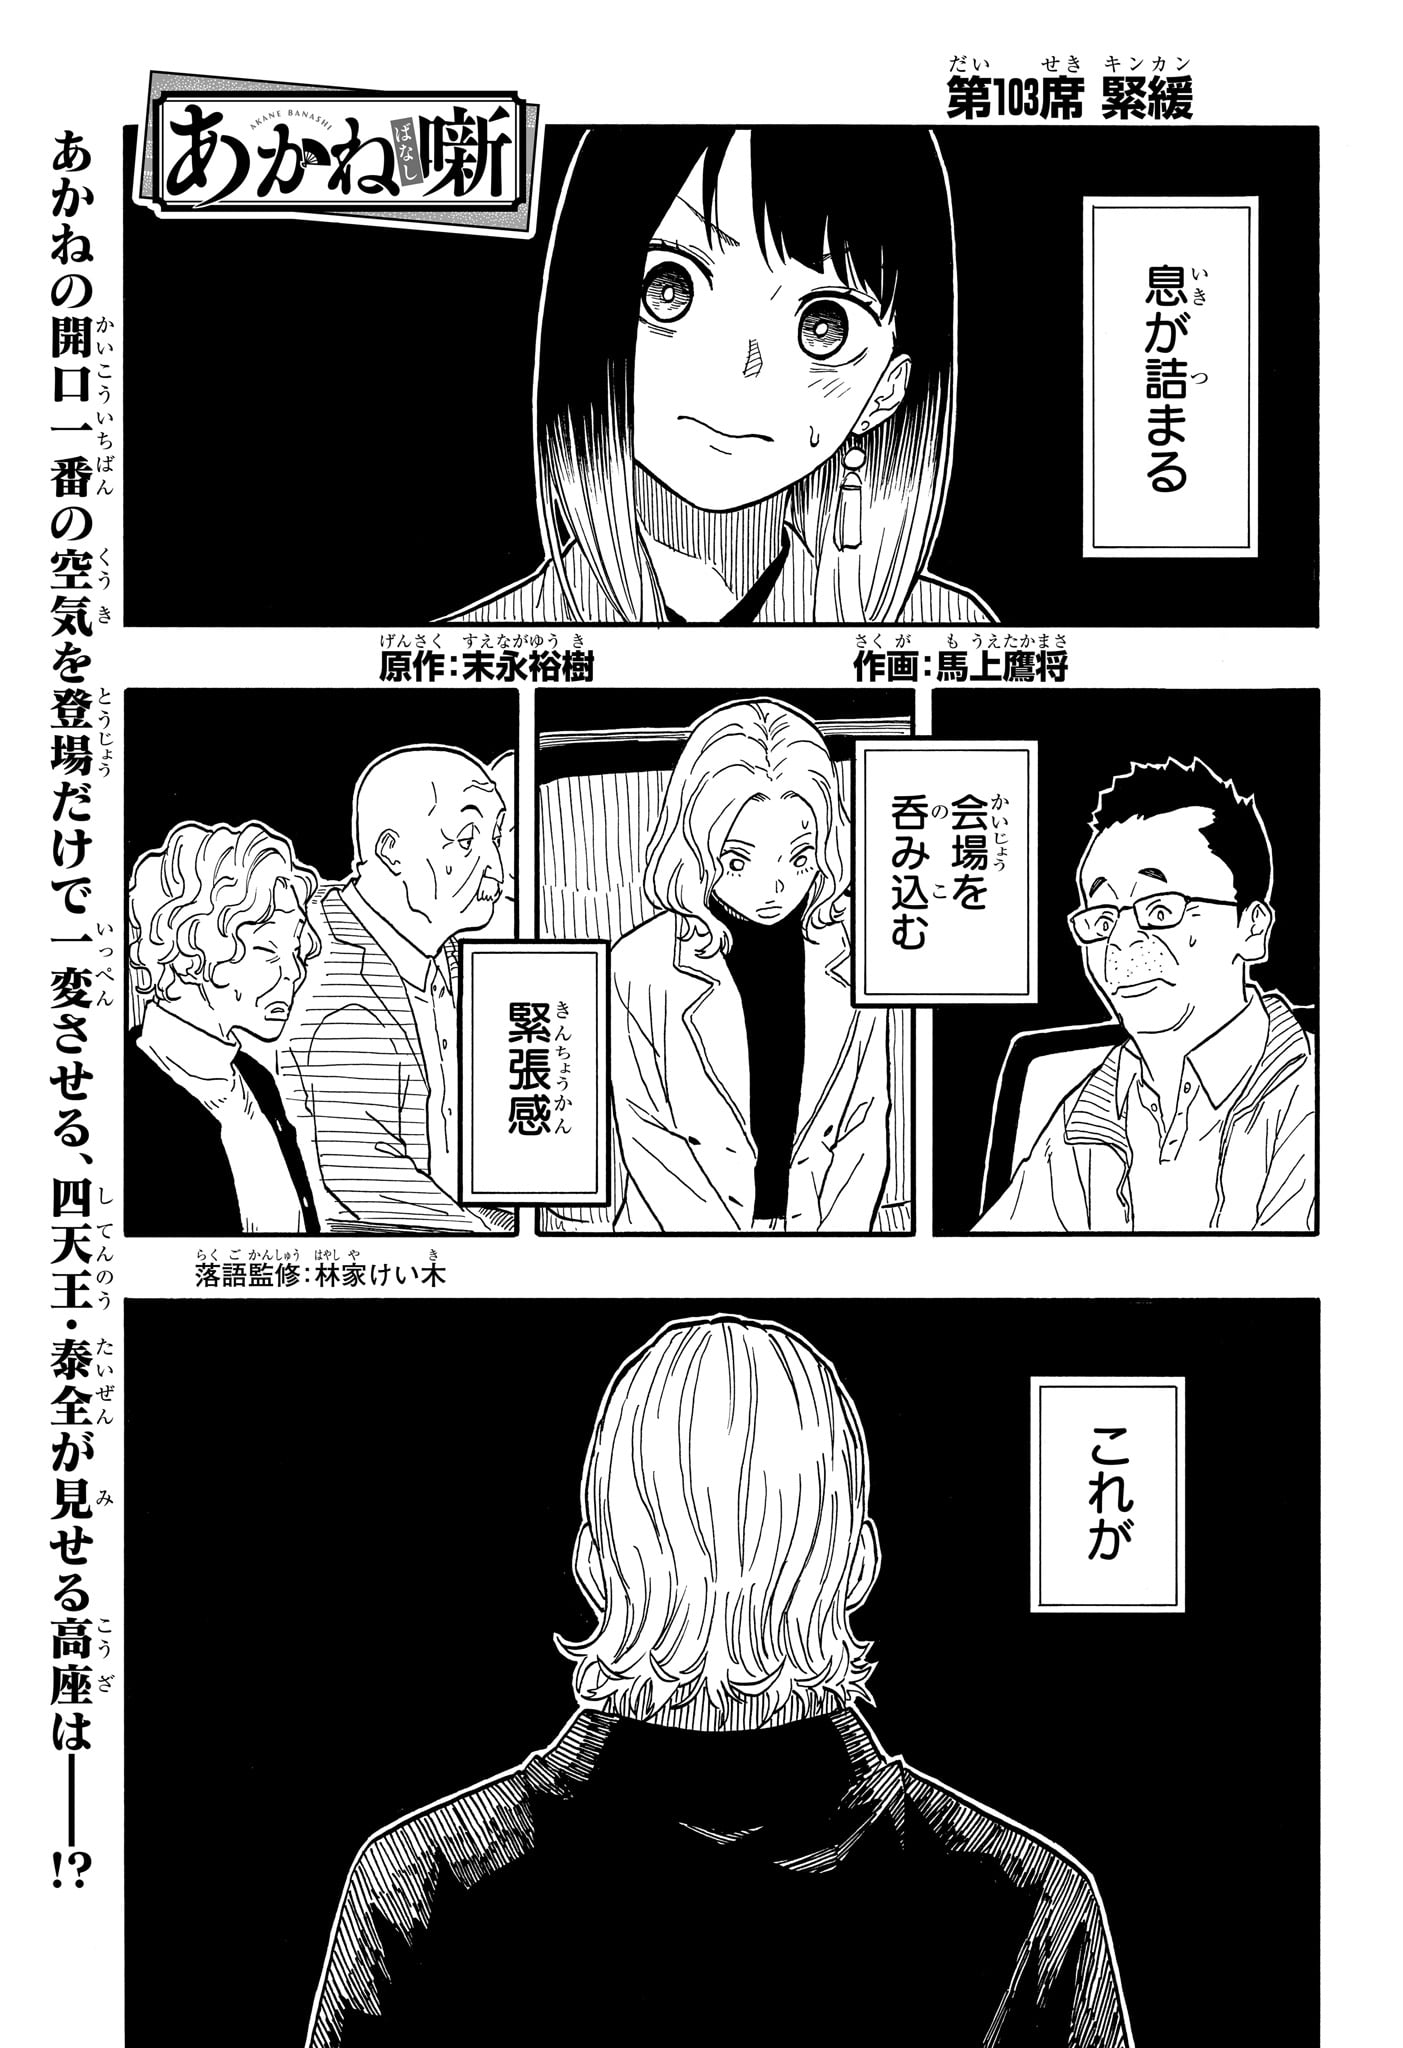 Akane-Banashi - Chapter 103 - Page 1